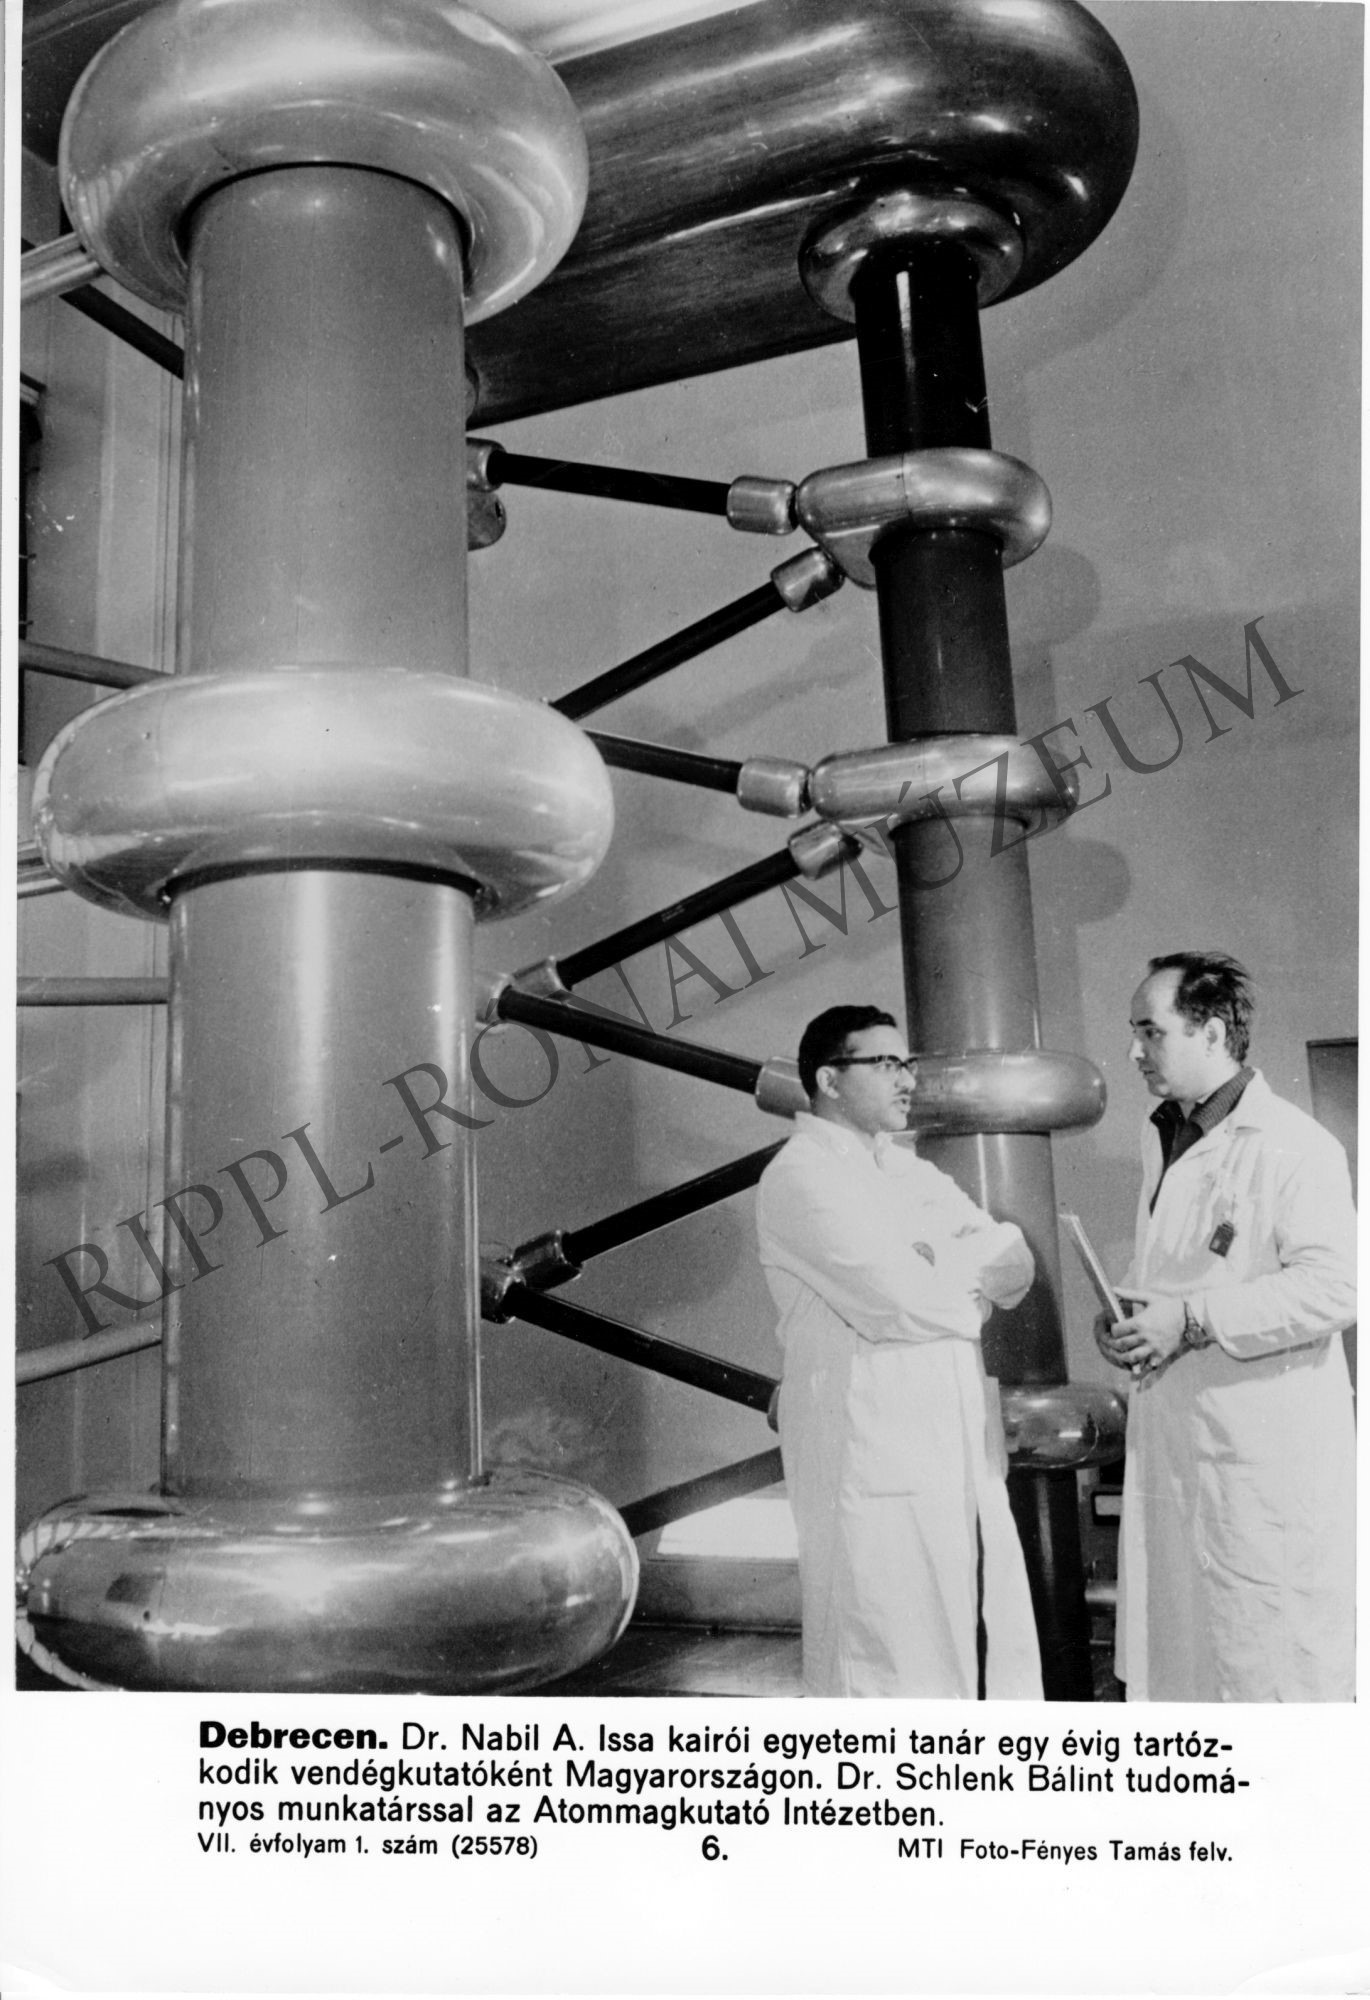 A debreceni Atommagkutató Intézetben dr. Nabil A. Issa kairói egyetemi tanár és dr. Schlenk Bálint tud. munkatárs (Rippl-Rónai Múzeum CC BY-NC-SA)